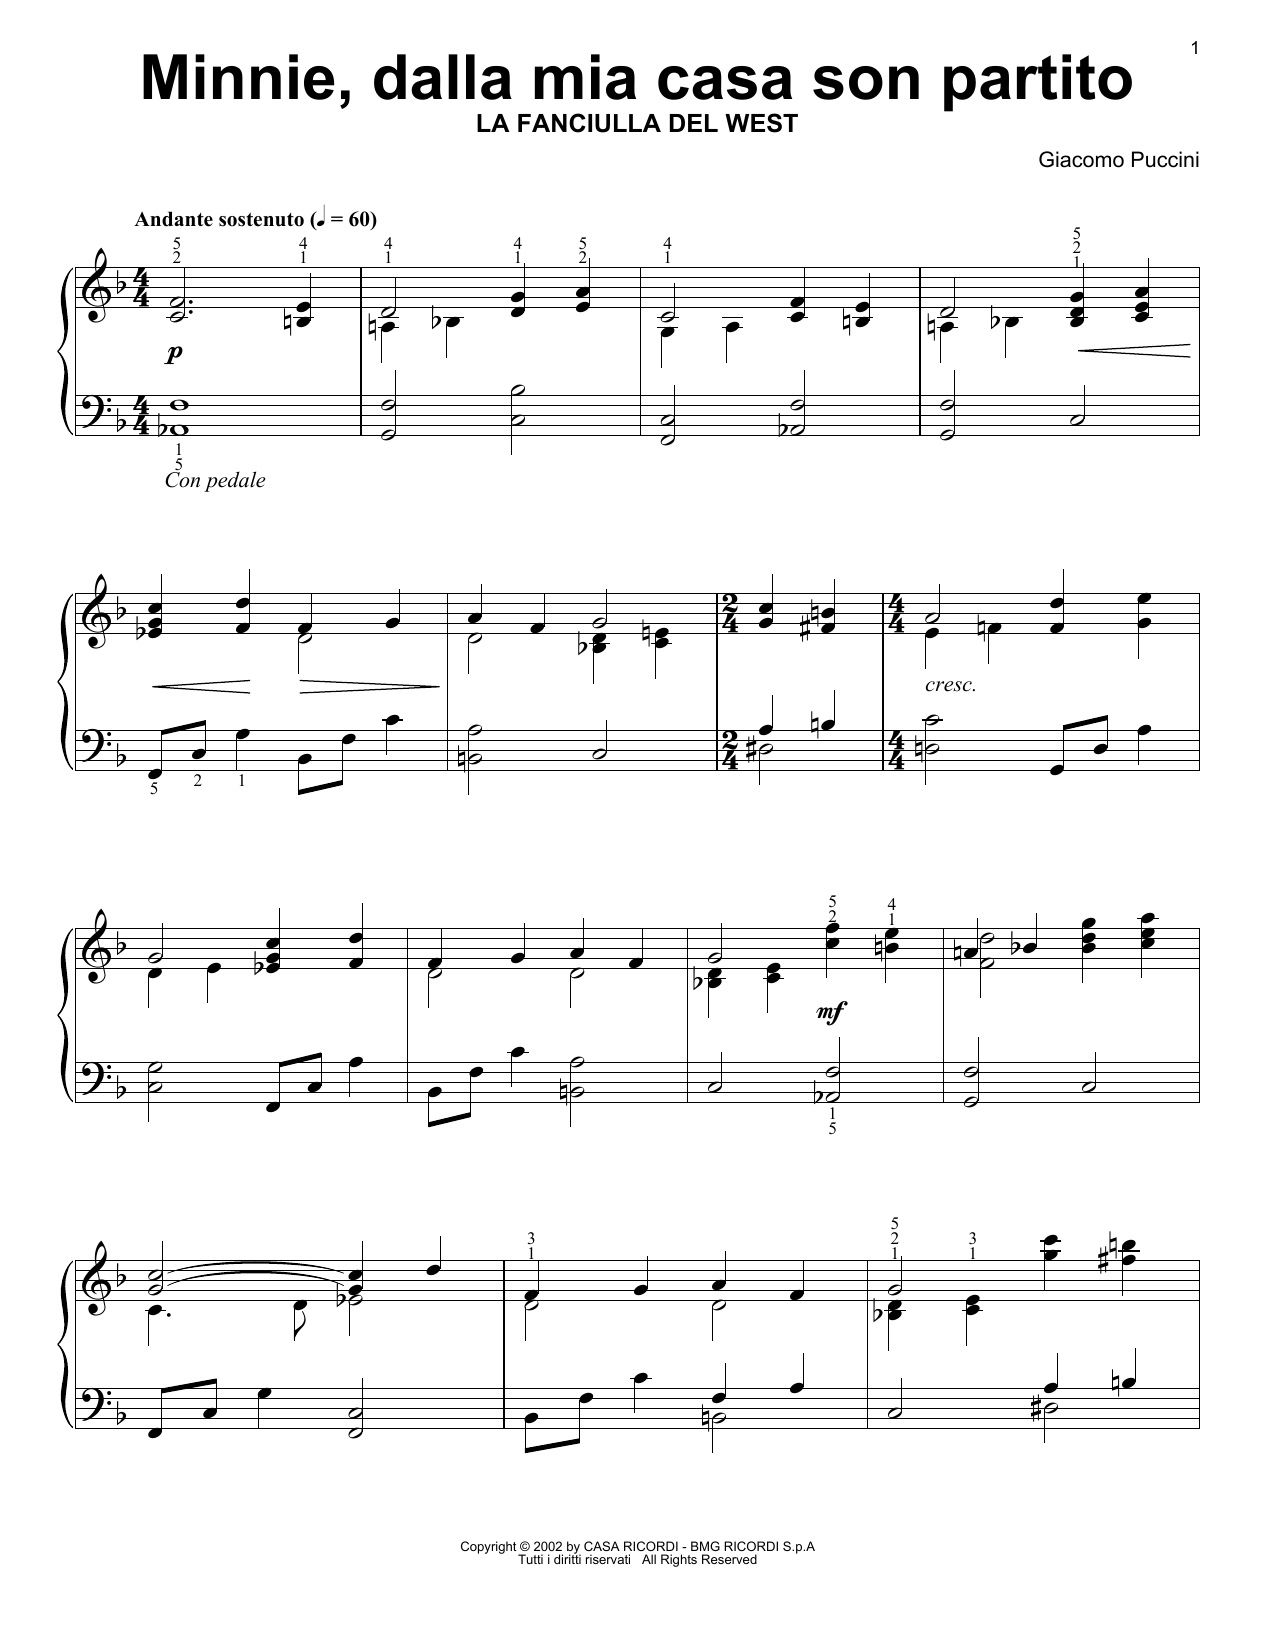 Giacomo Puccini Minnie, Dalla Mia Casa Son Partito Sheet Music Notes & Chords for Easy Piano Solo - Download or Print PDF